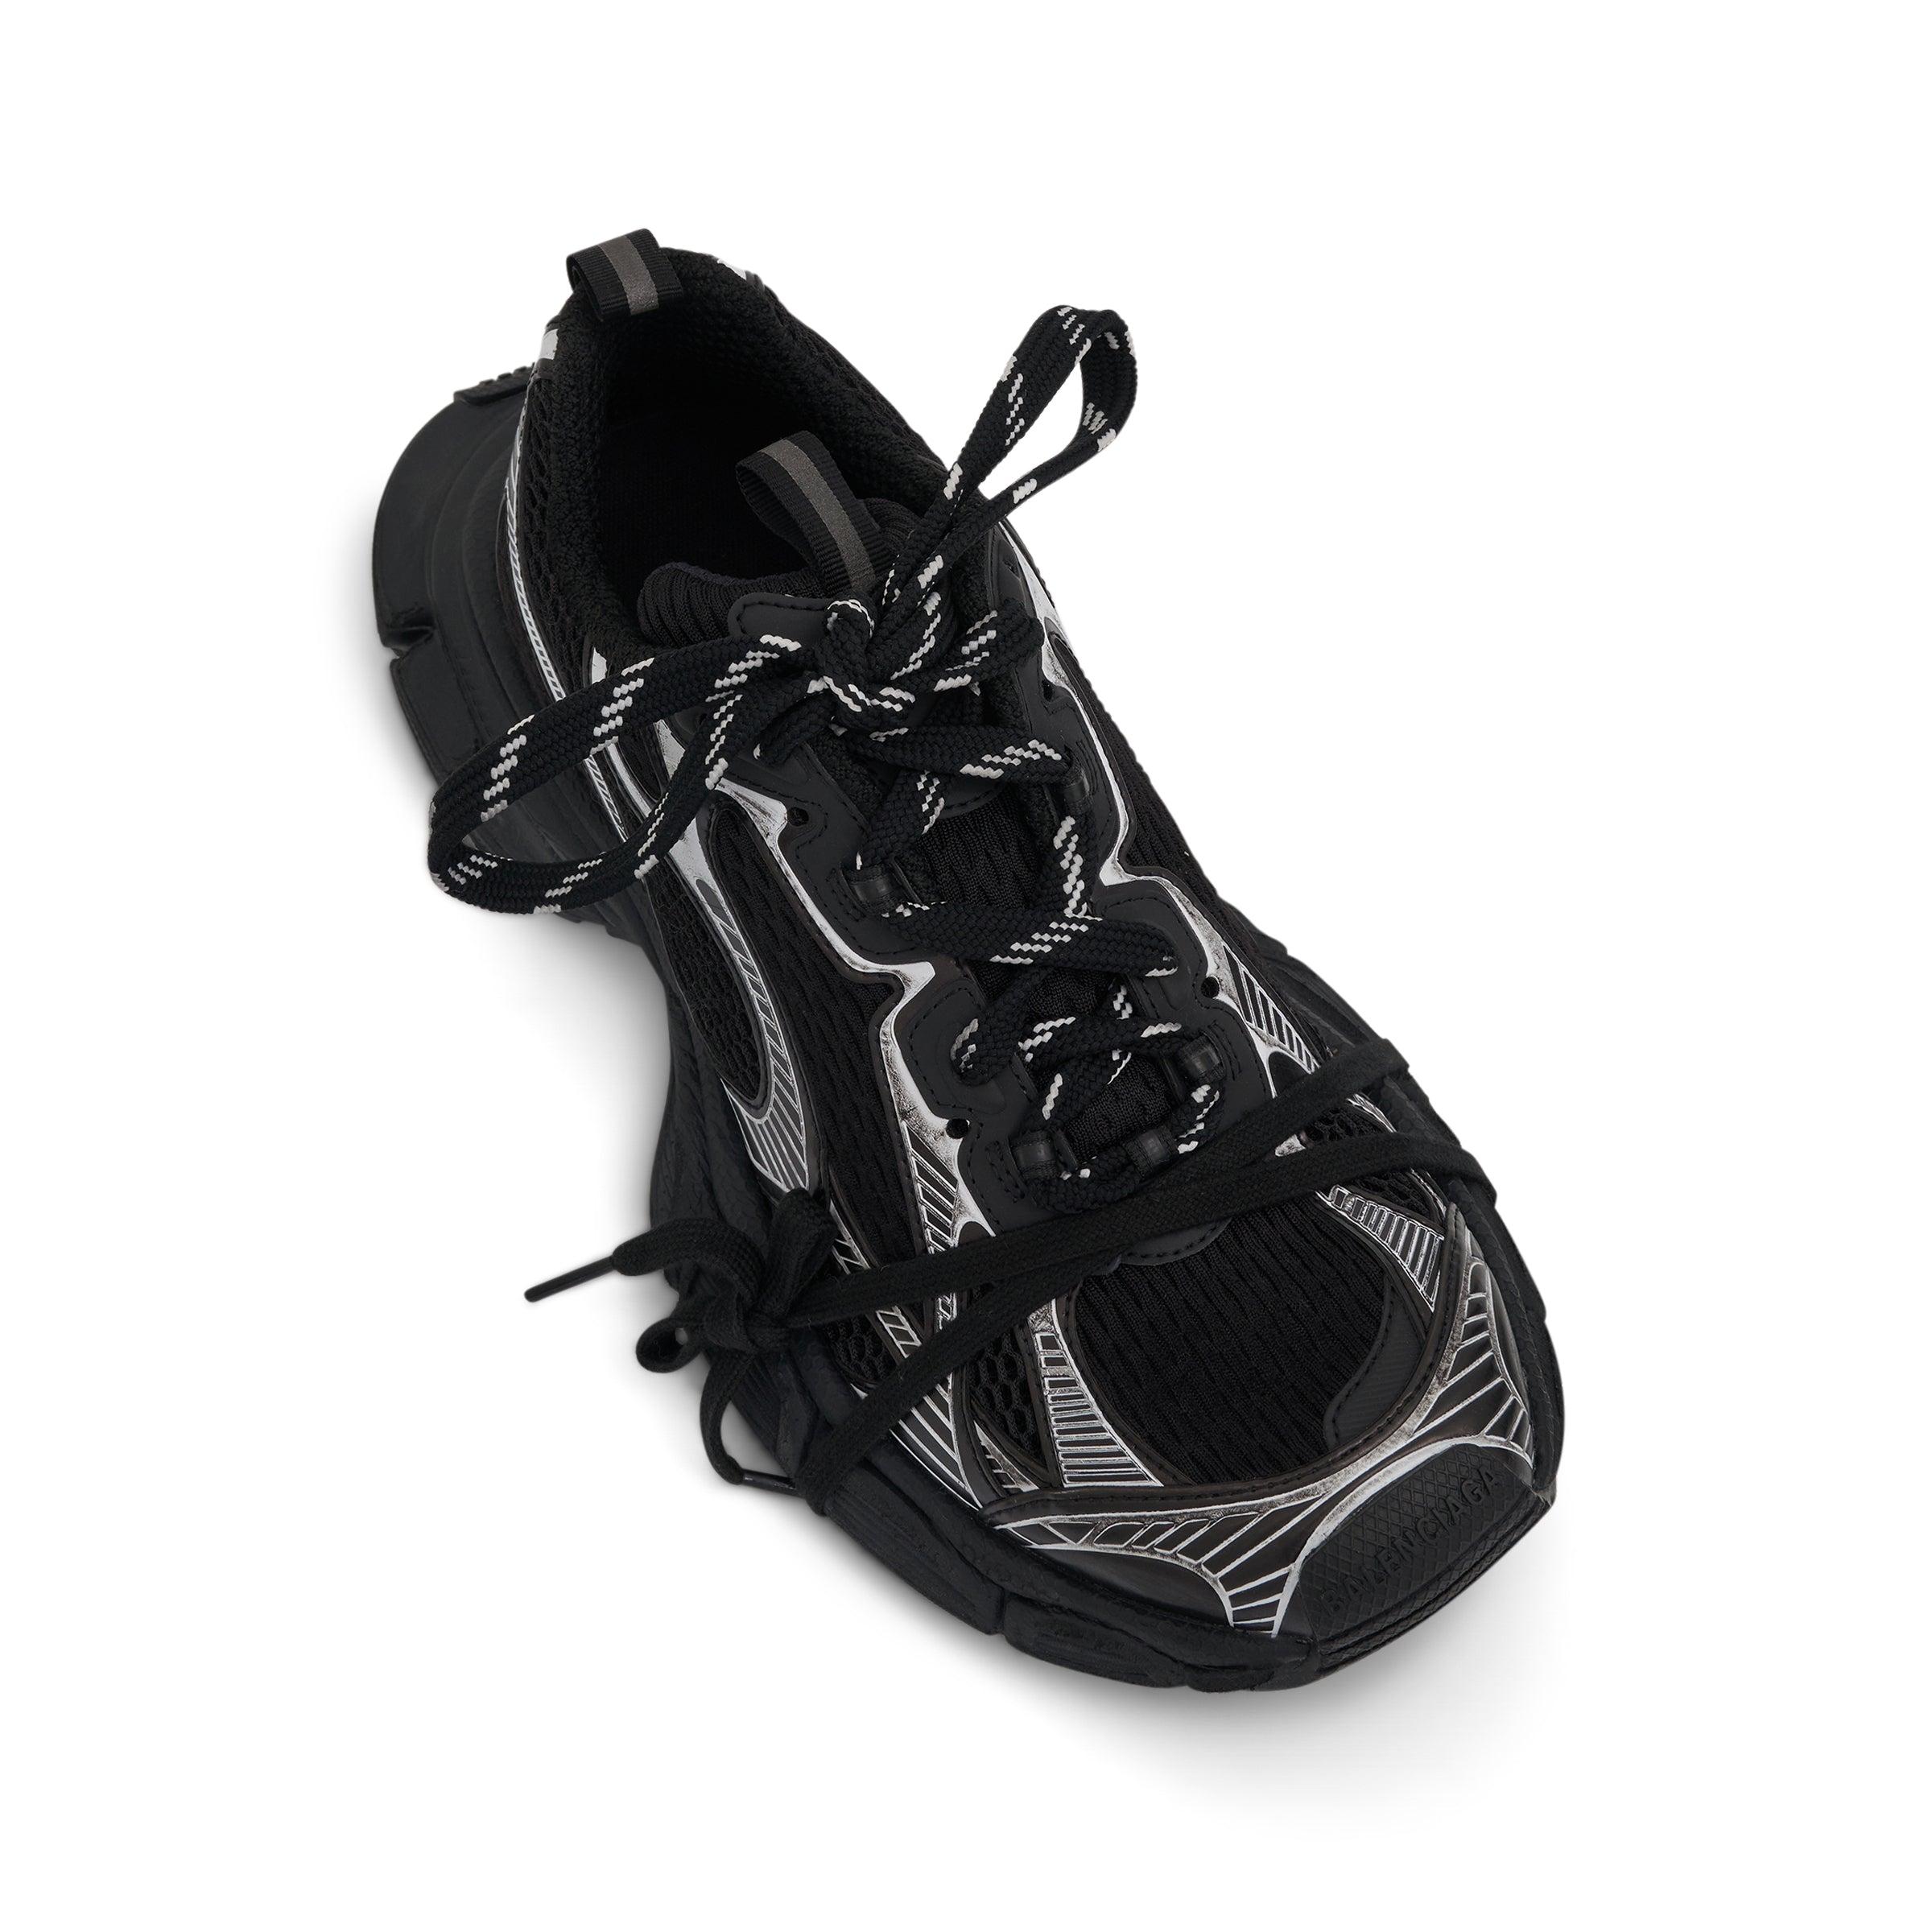 Men's 3xl Sneaker in Black